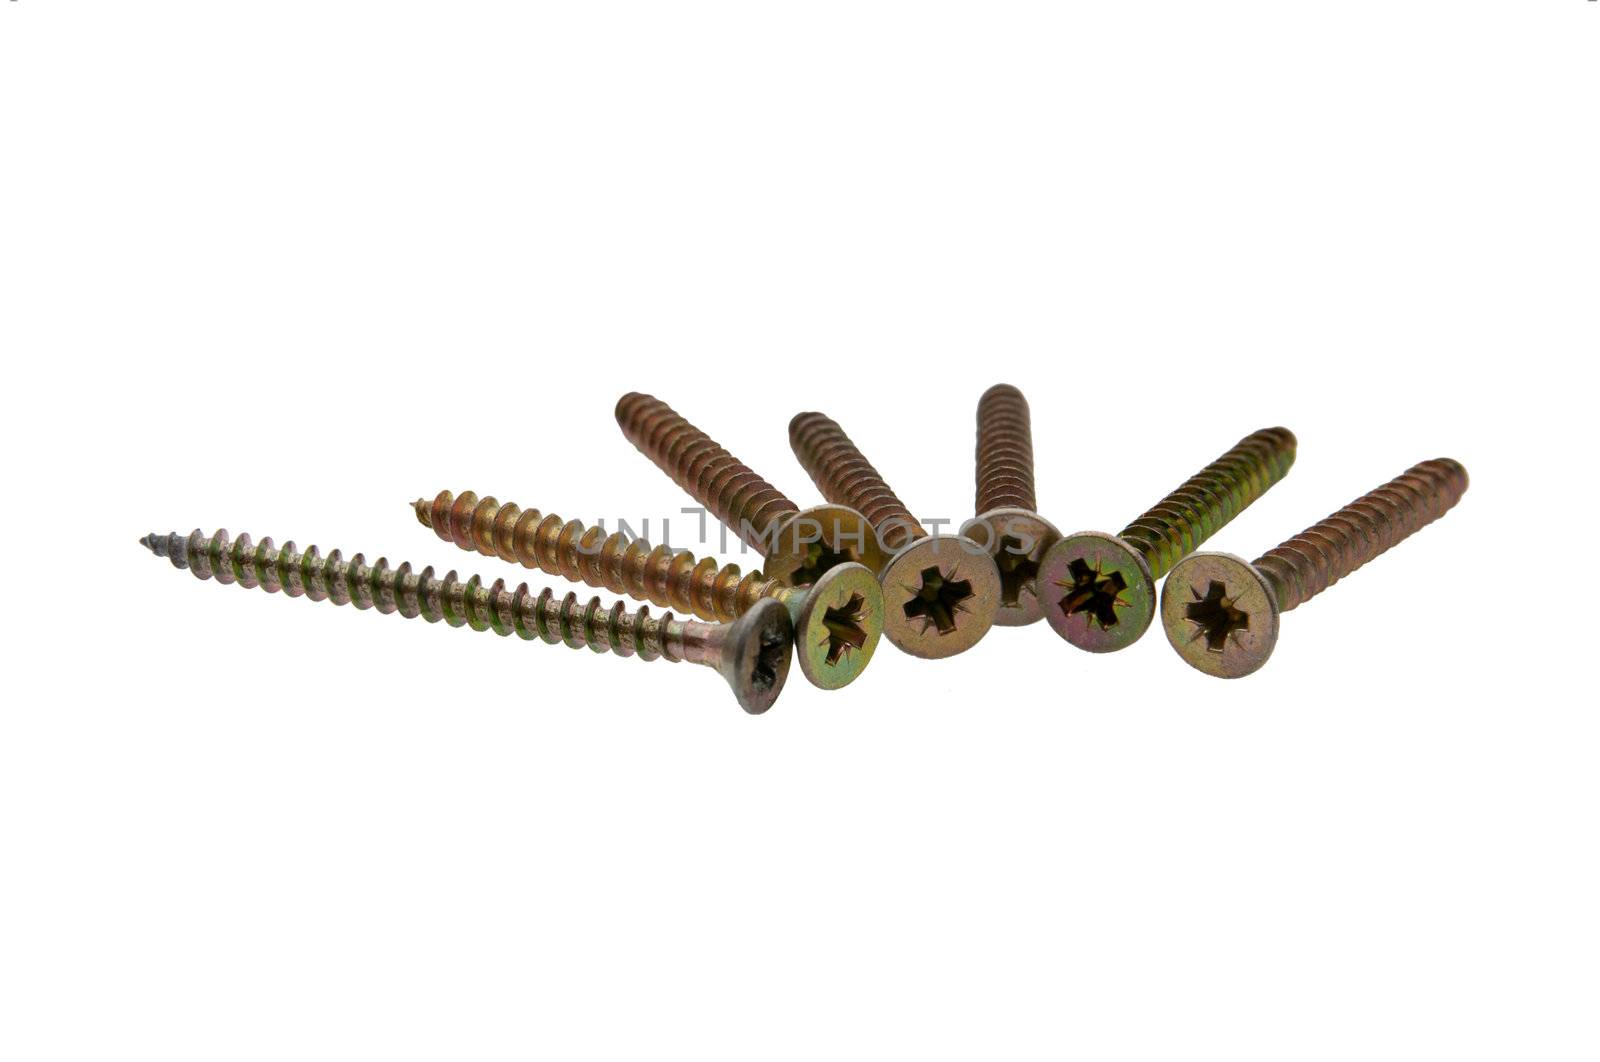 group of screws by dyvan